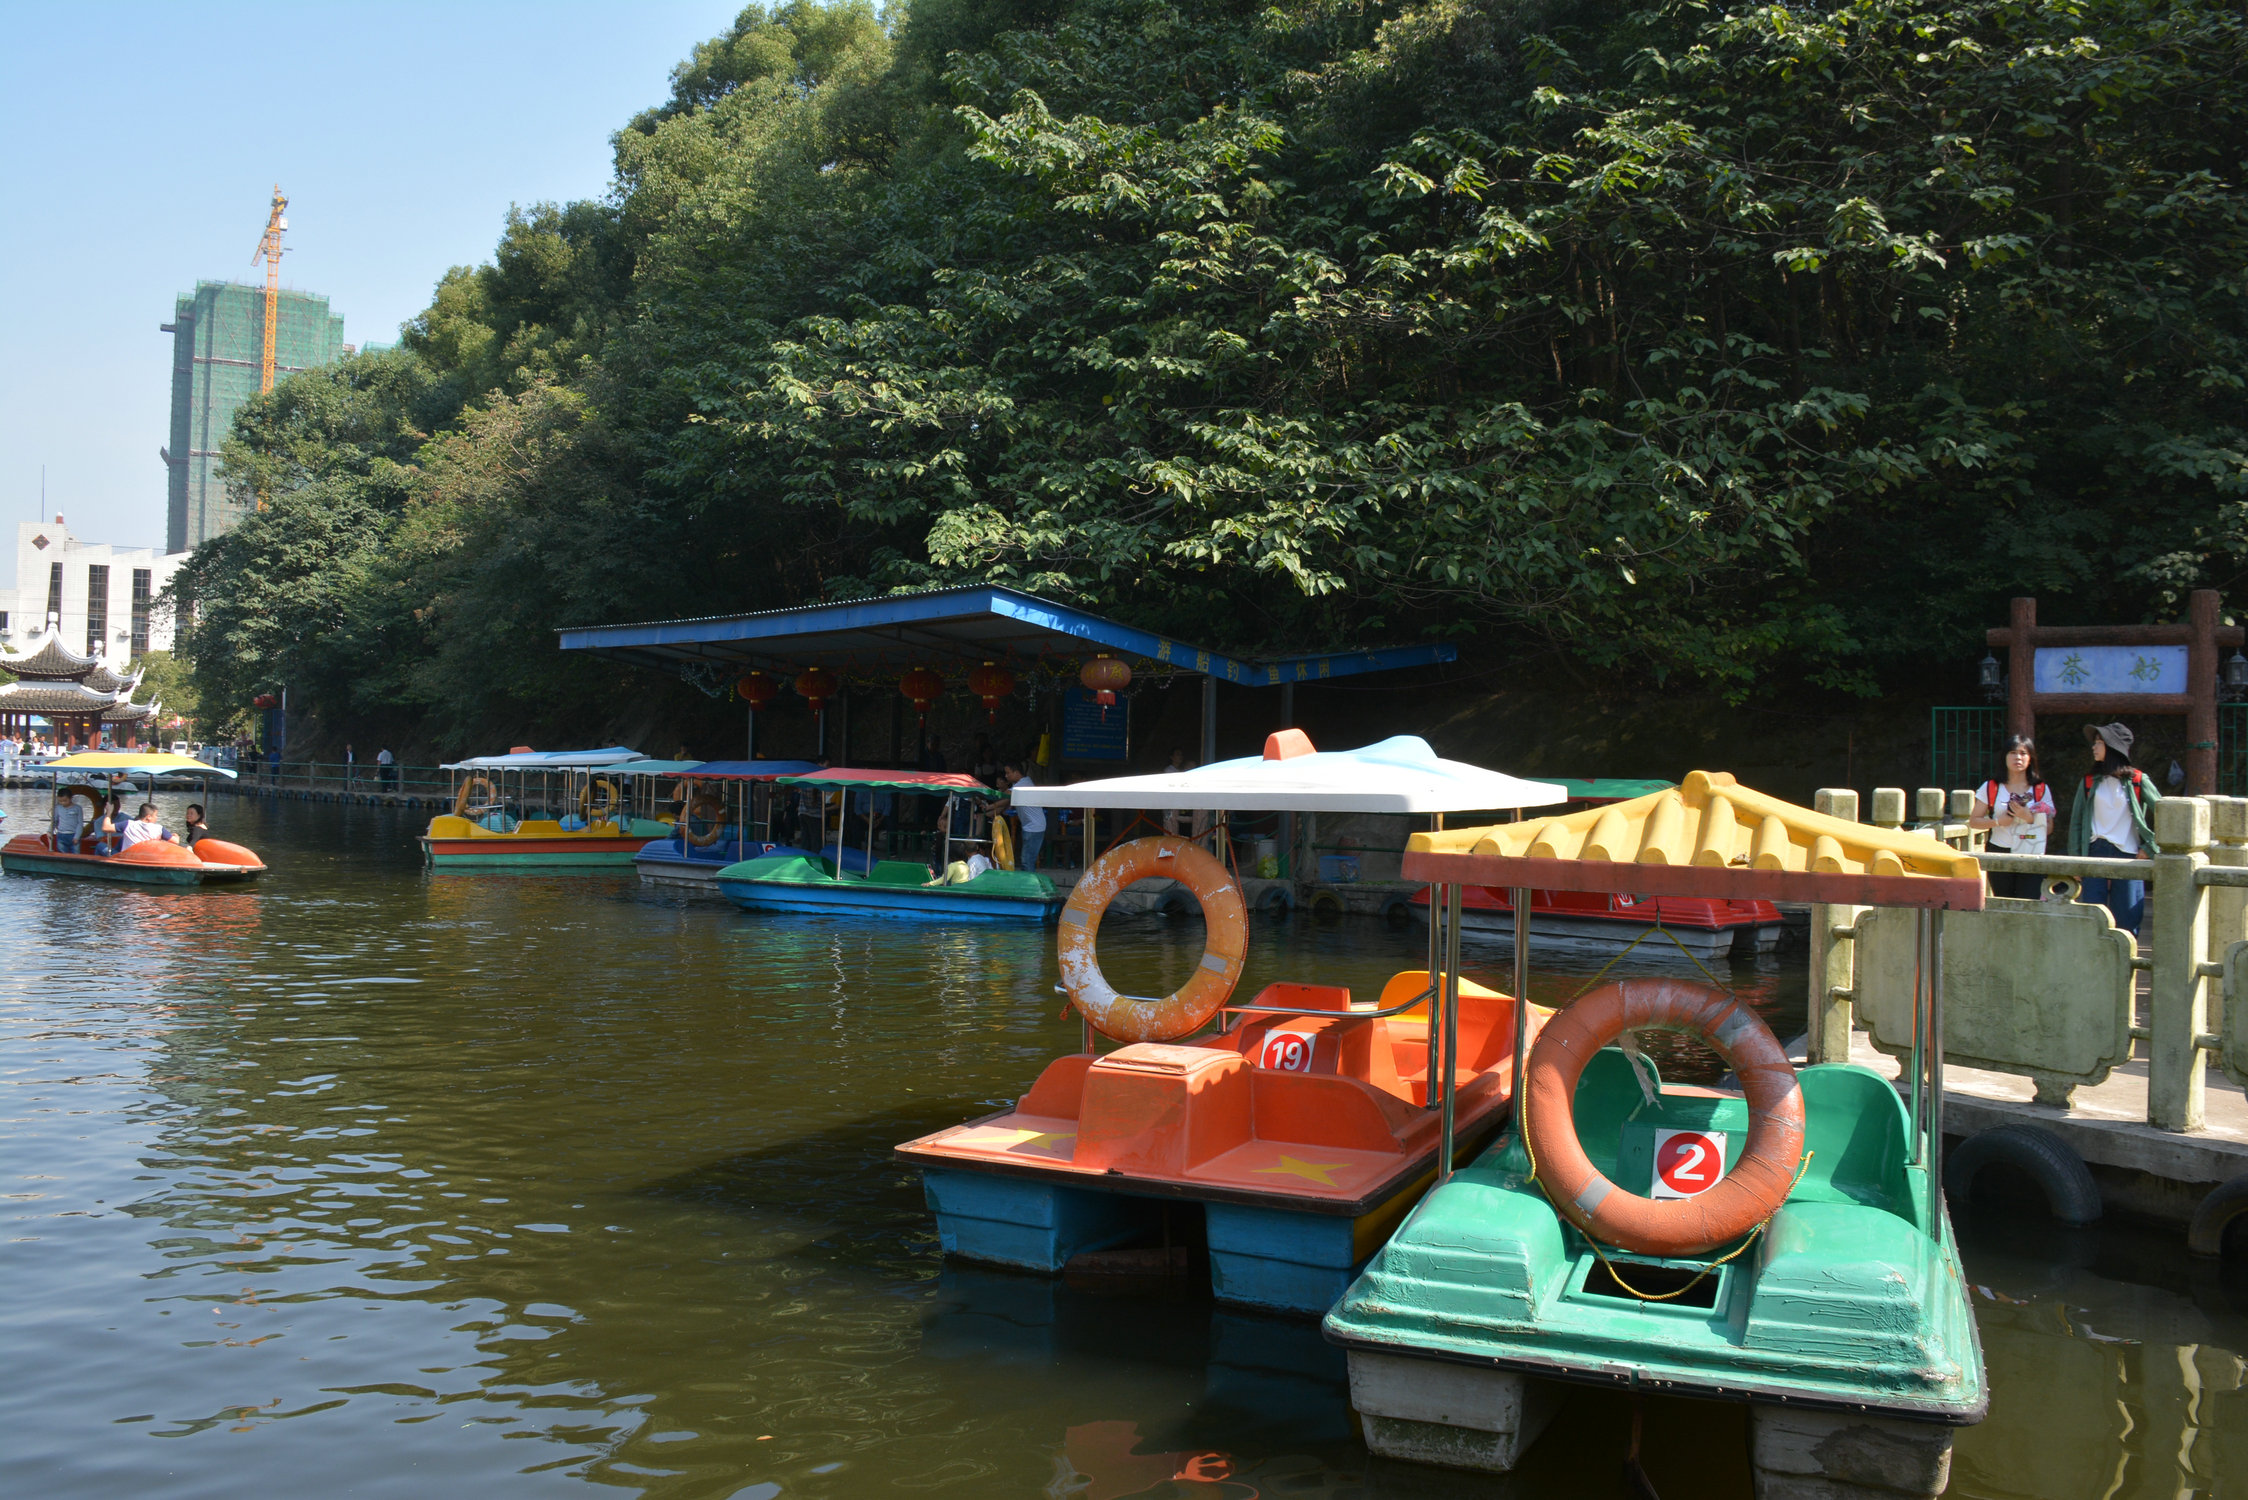 岳阳金鹗孔子公园p89:在水上游乐区域,可以乘船游湖,收费20元/人,游玩